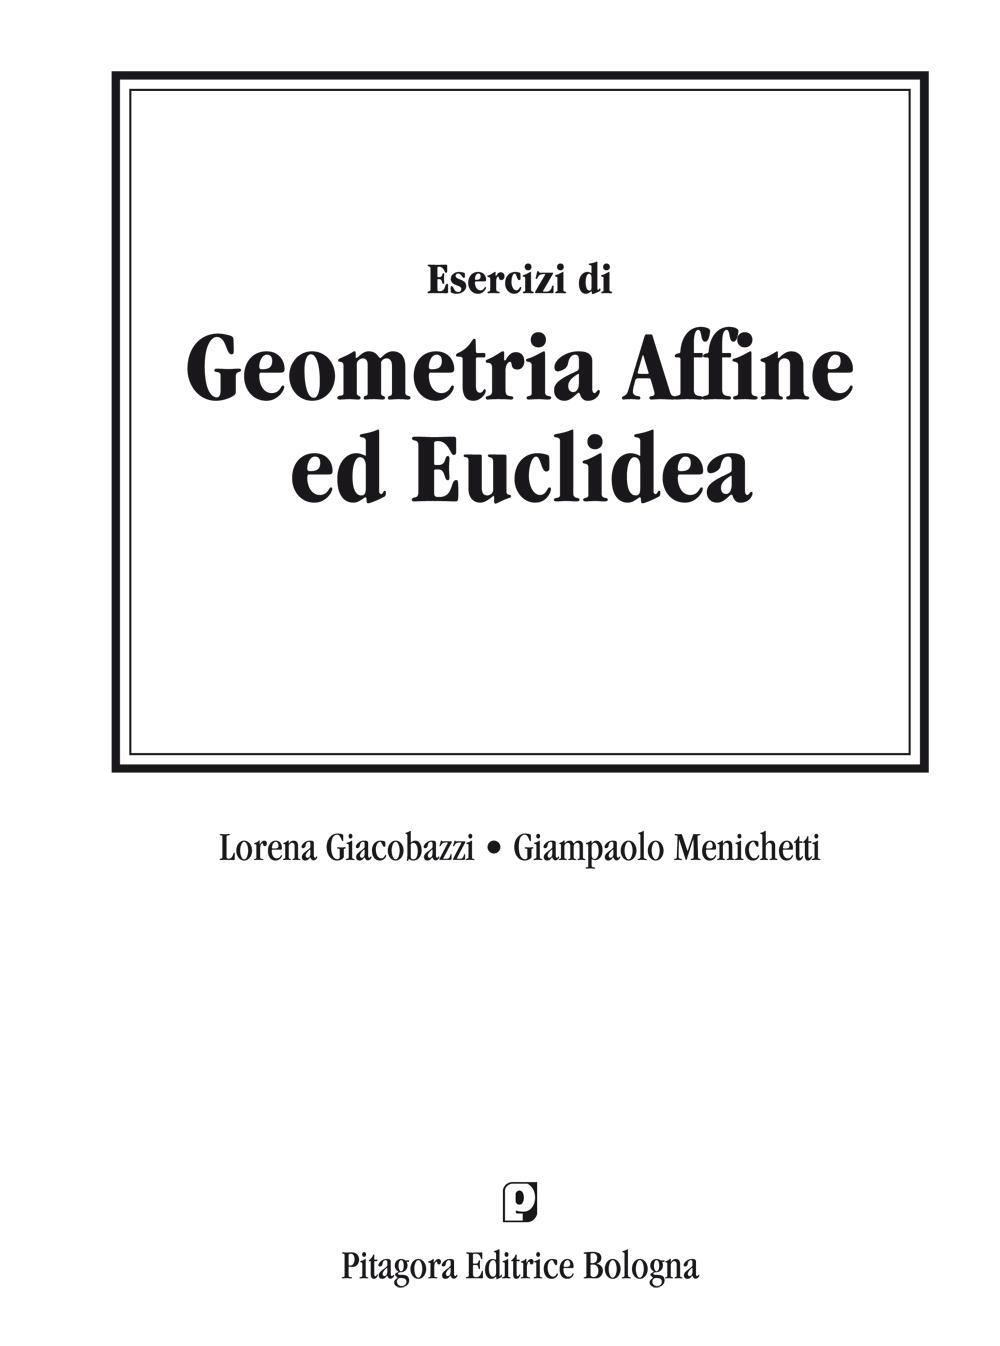 Image of Esercizi di geometria affine ed euclidea